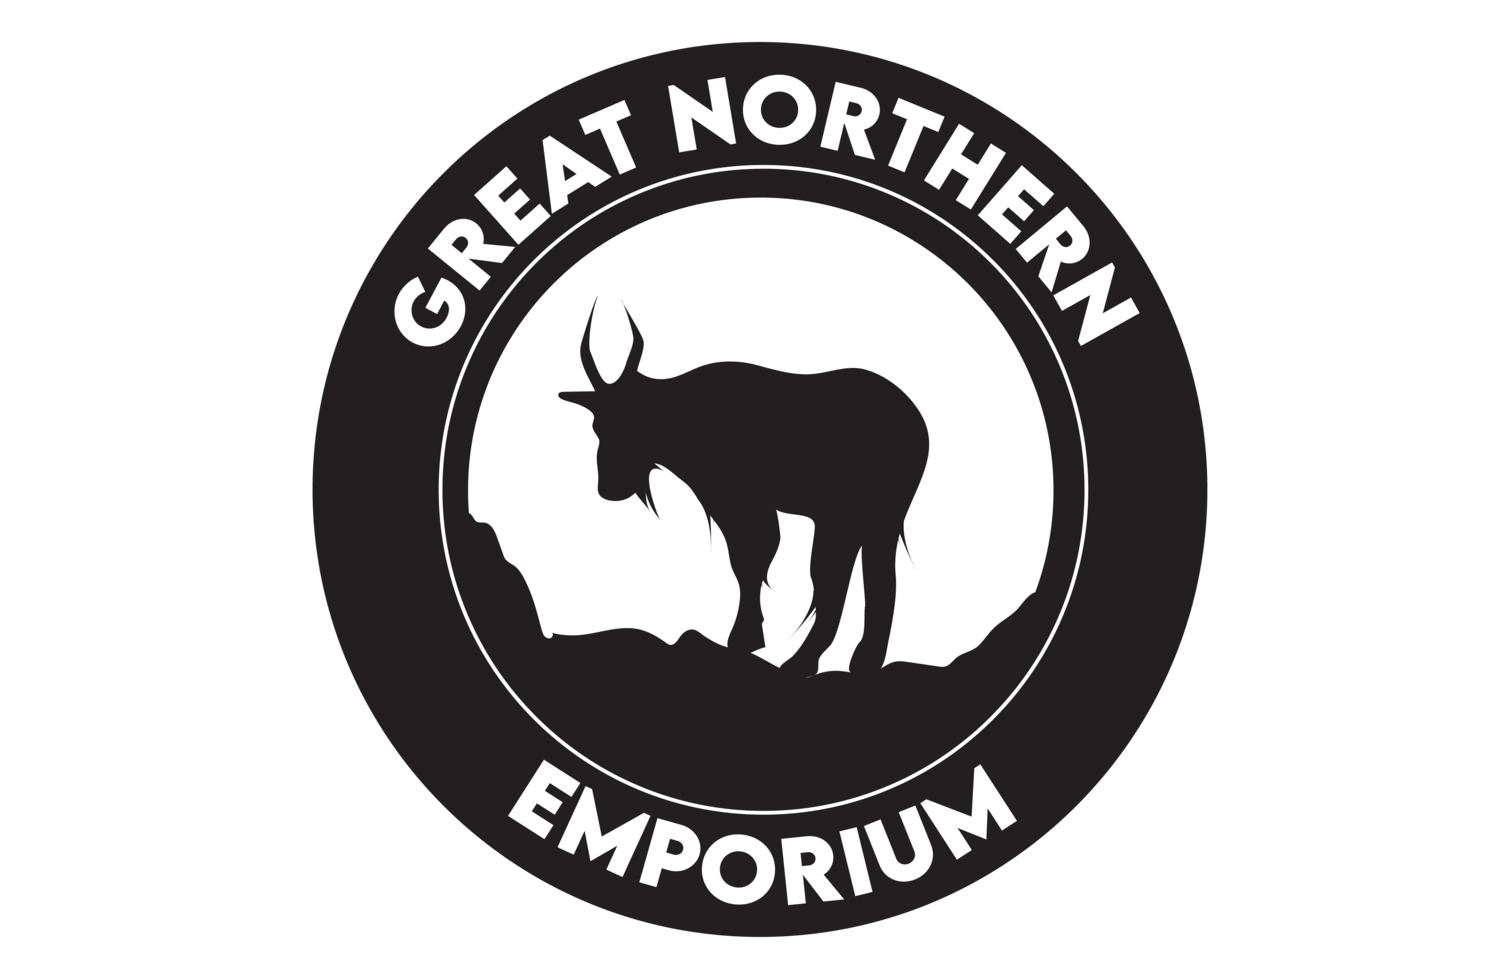 Great Northern Emporium